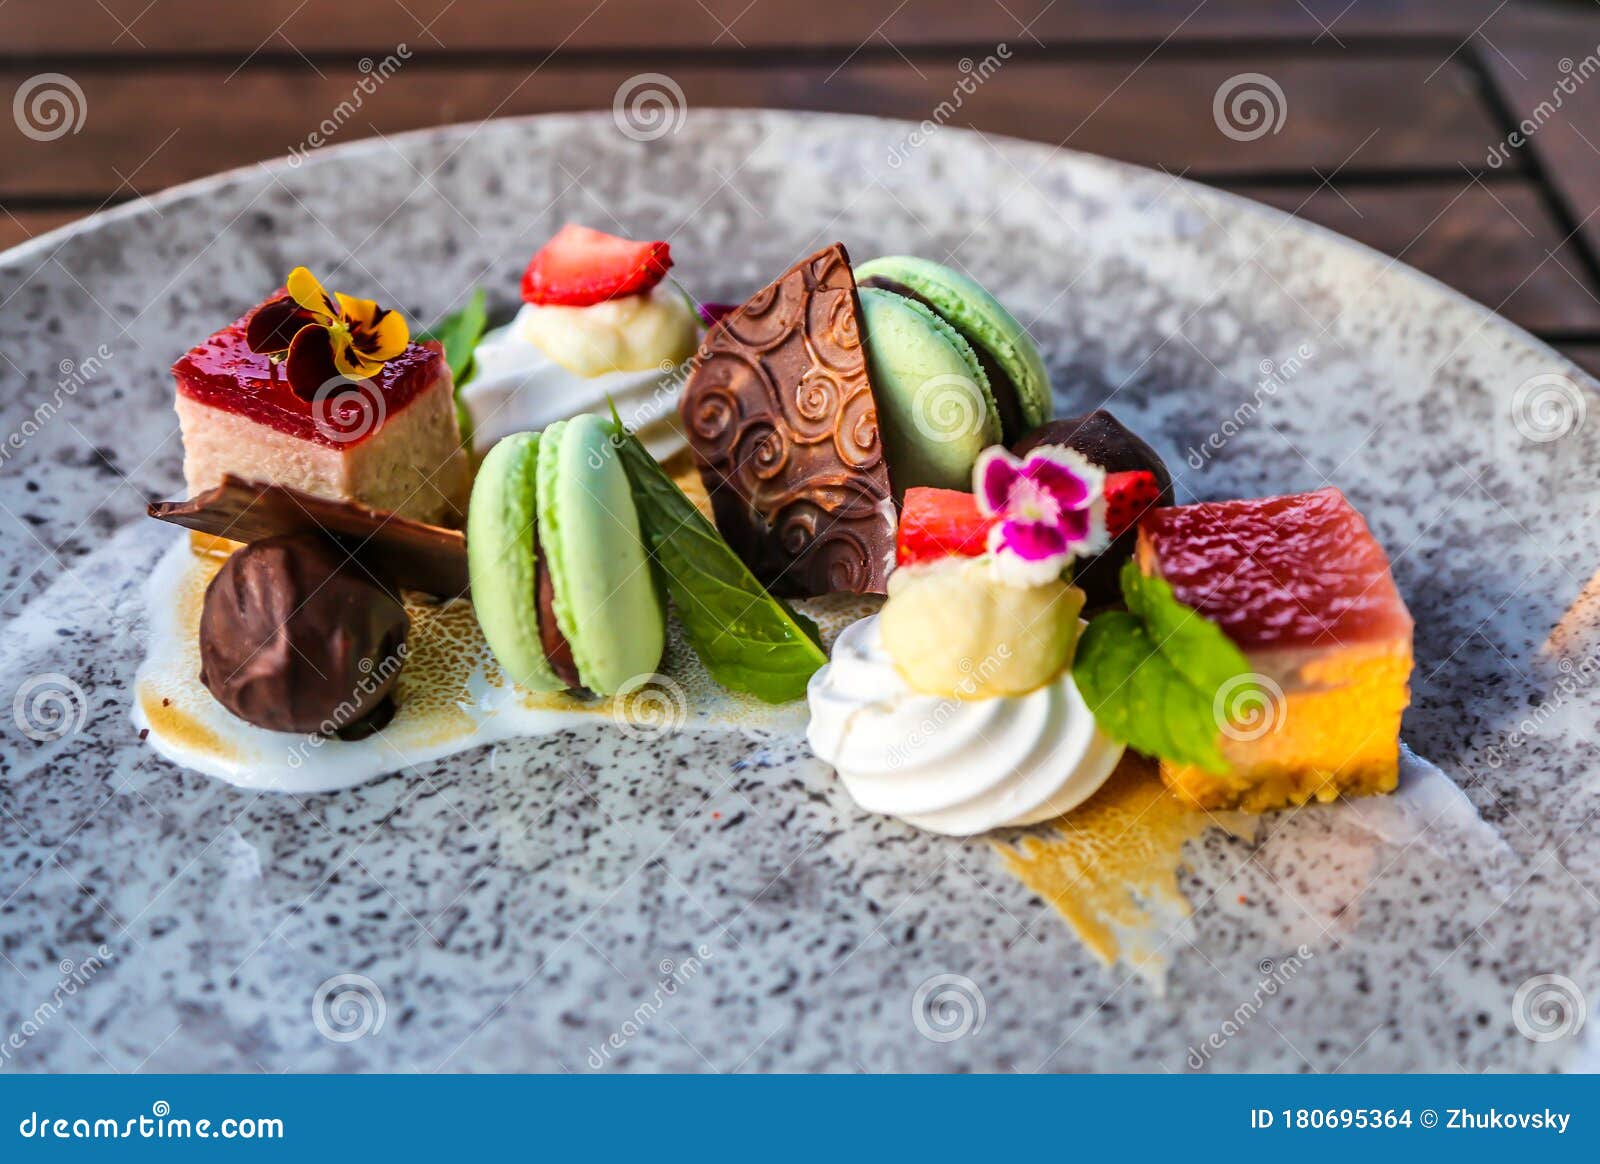 fancy desert served in gourmet restaurant